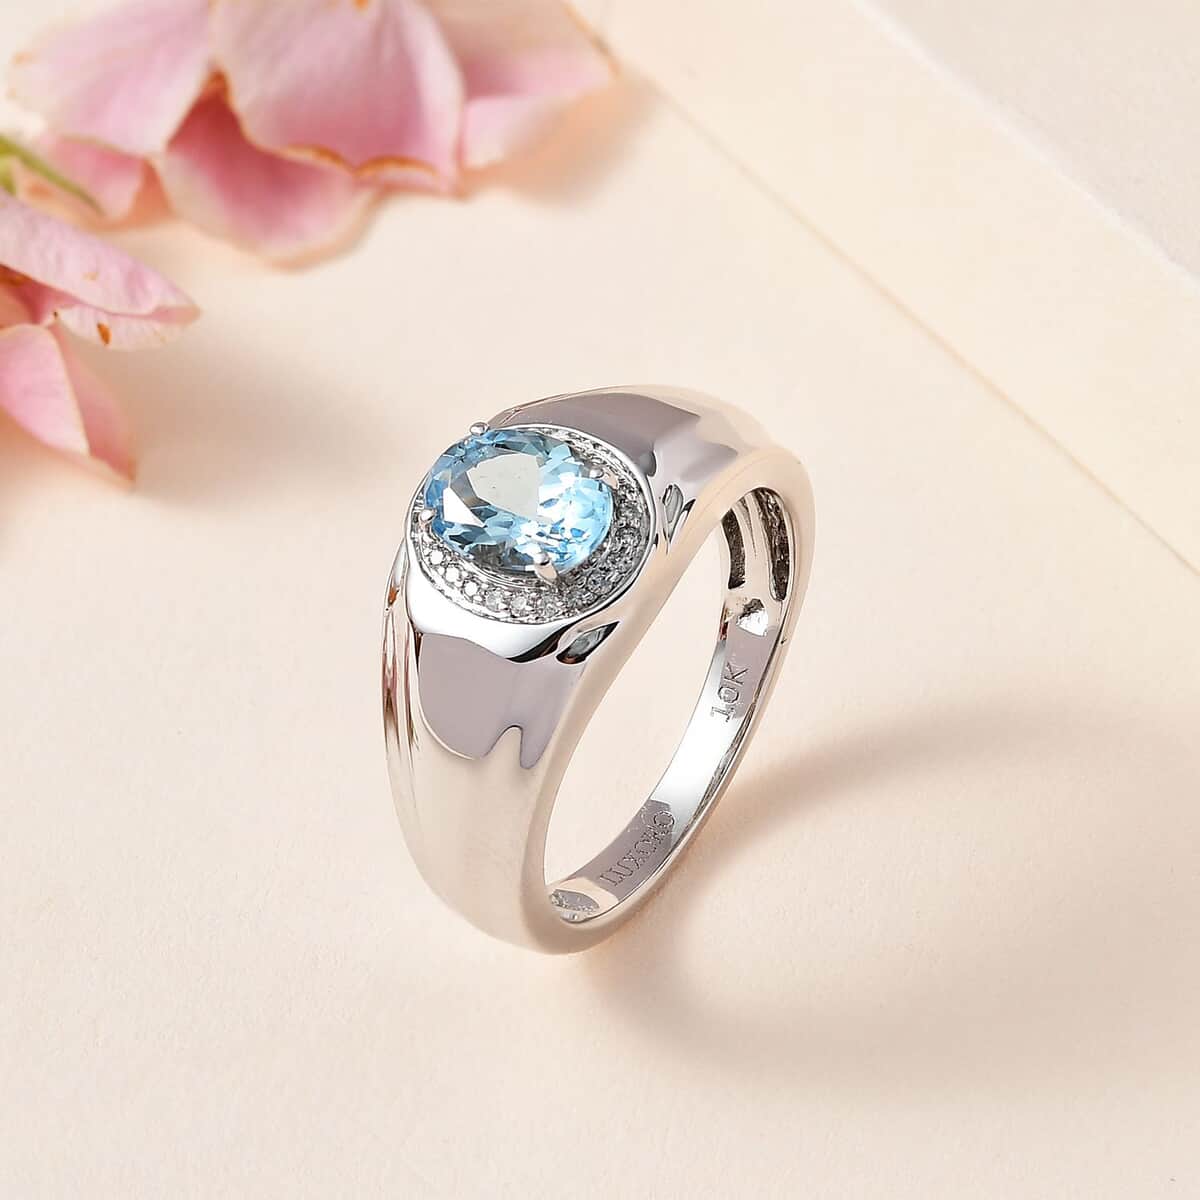 Luxoro 10K White Gold Premium Santa Maria Aquamarine and G-H I2 Diamond Men's Ring (Size 12.0) 5.75 Grams 1.20 ctw image number 1